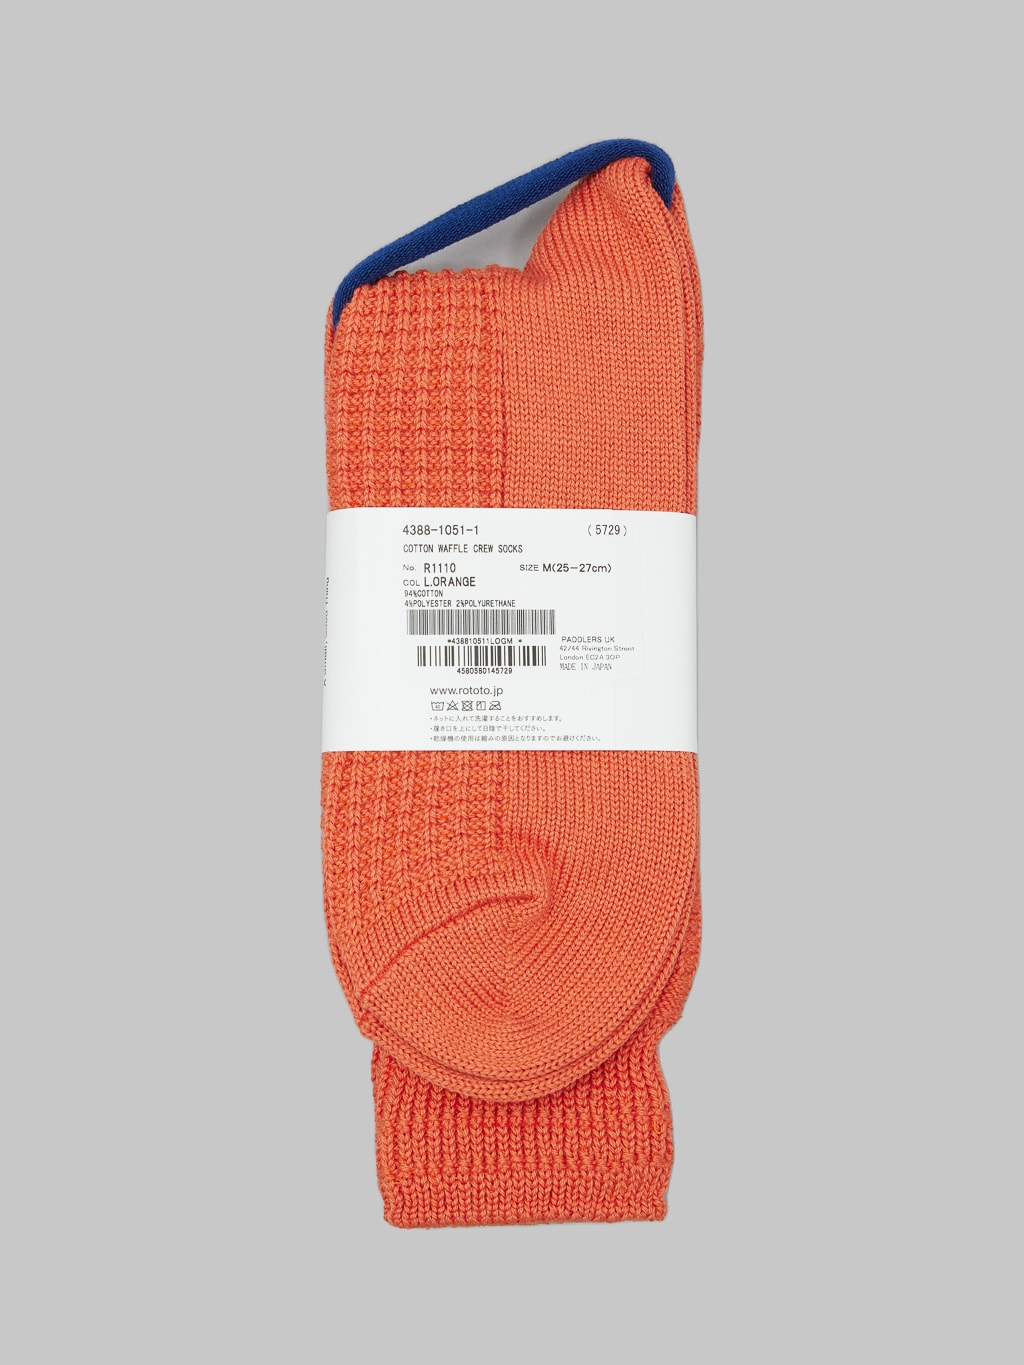 rototo cotton waffle crew socks orange back label details